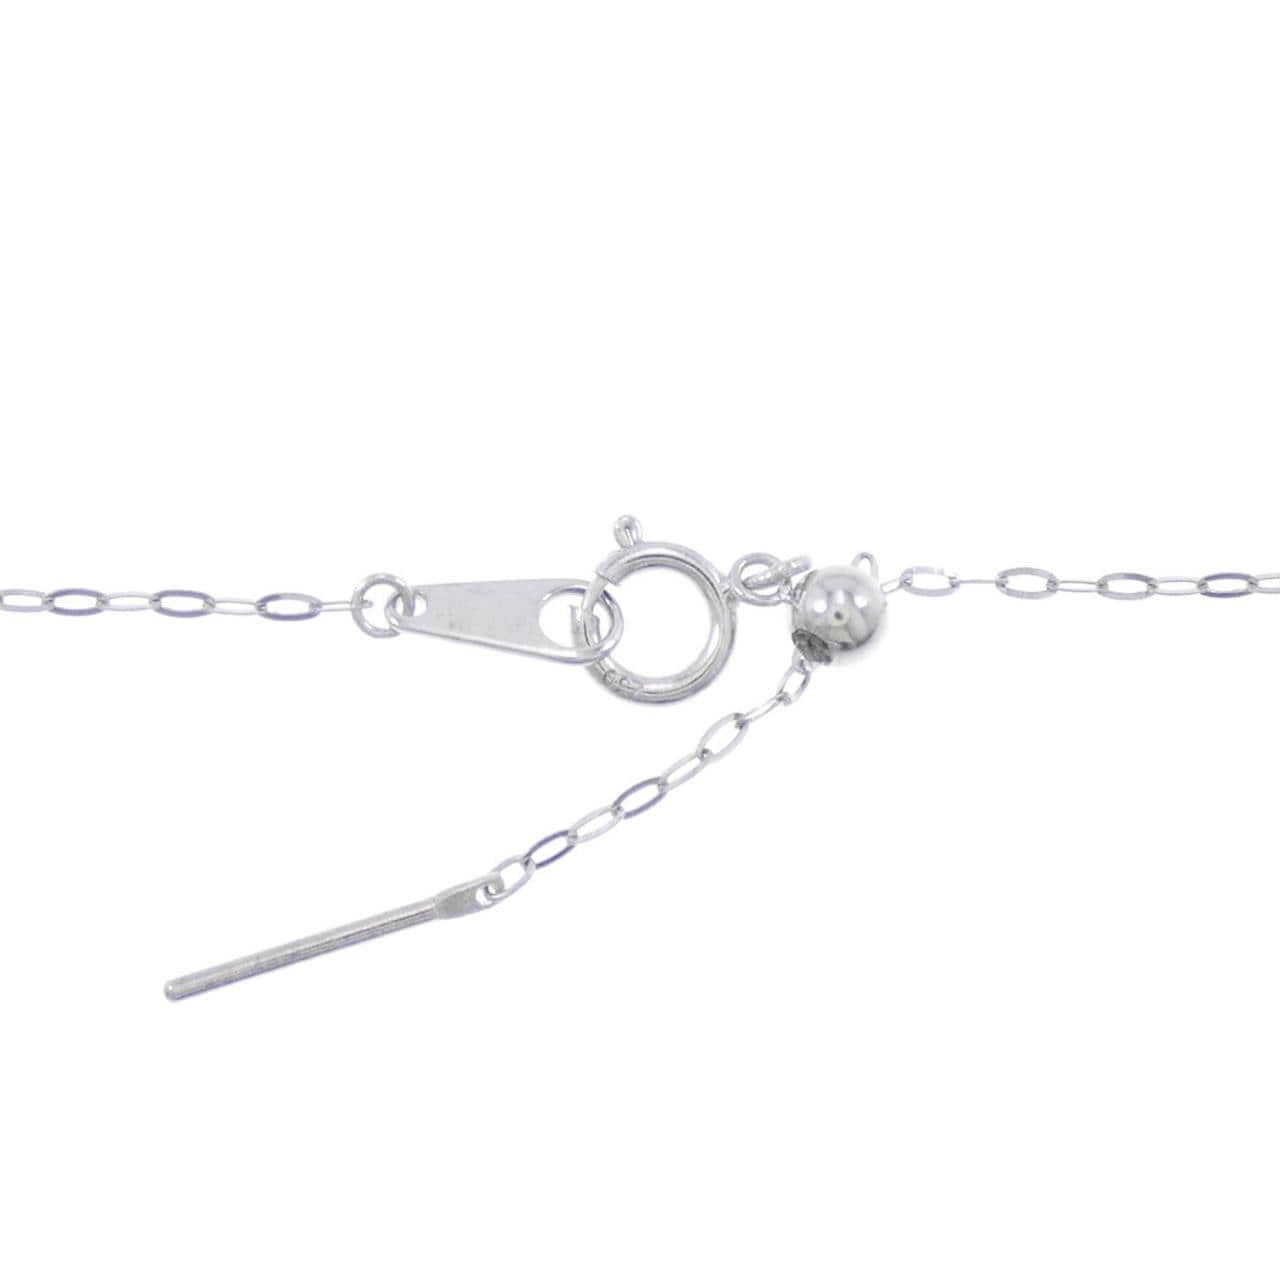 K18WG Azuki chain necklace